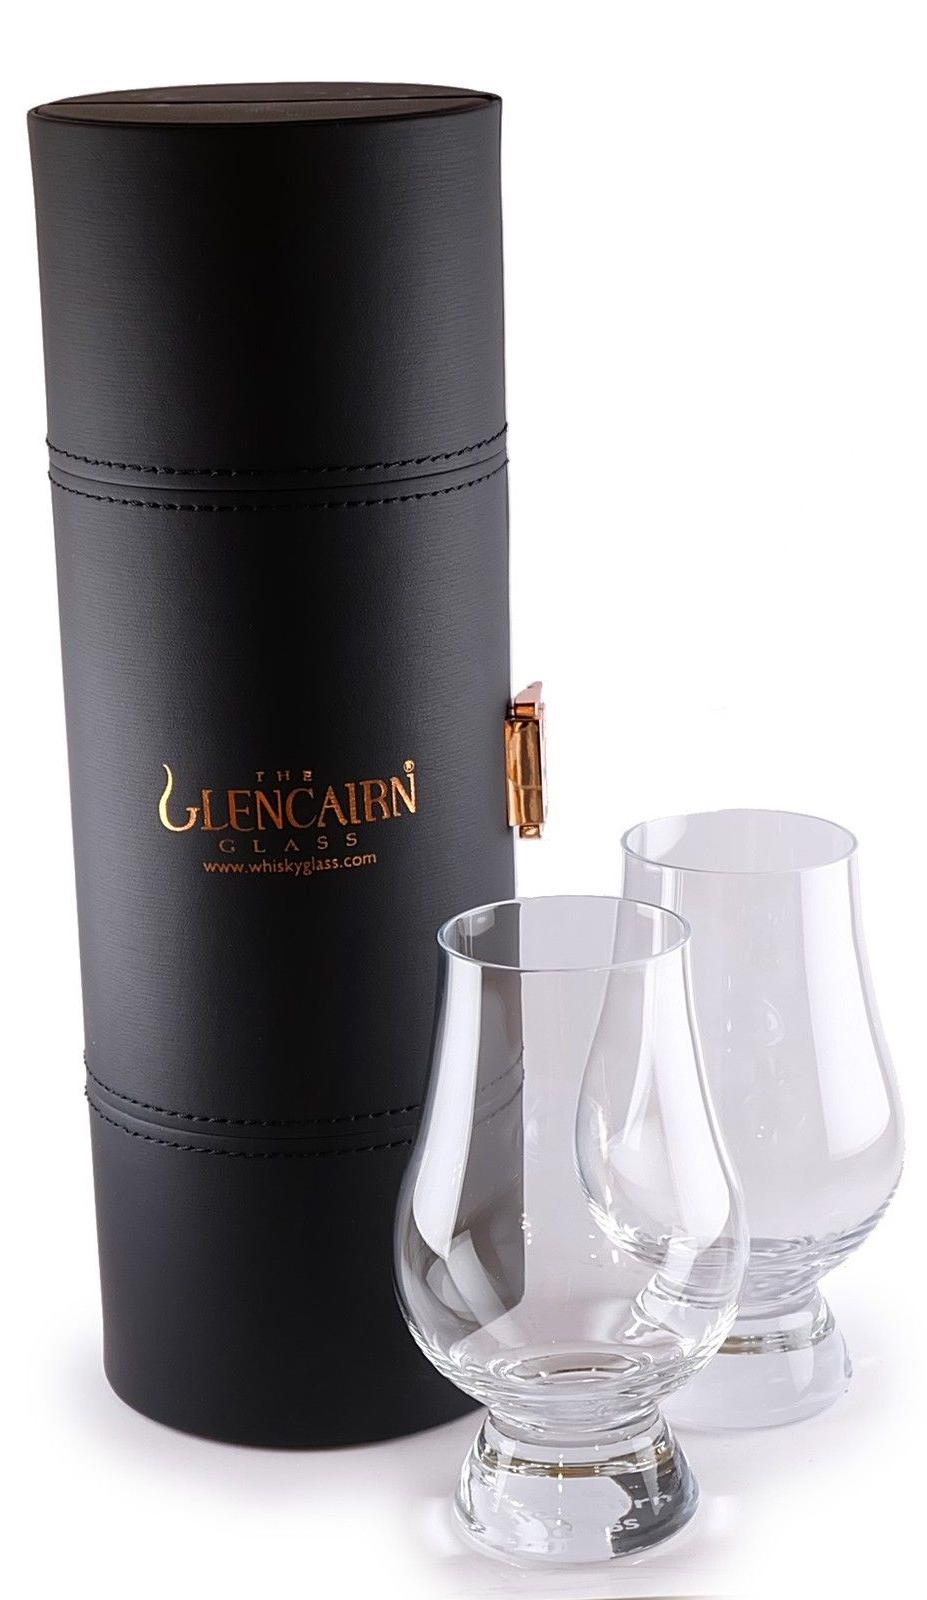 Glencairn Whisky Glass Travel Box - 2